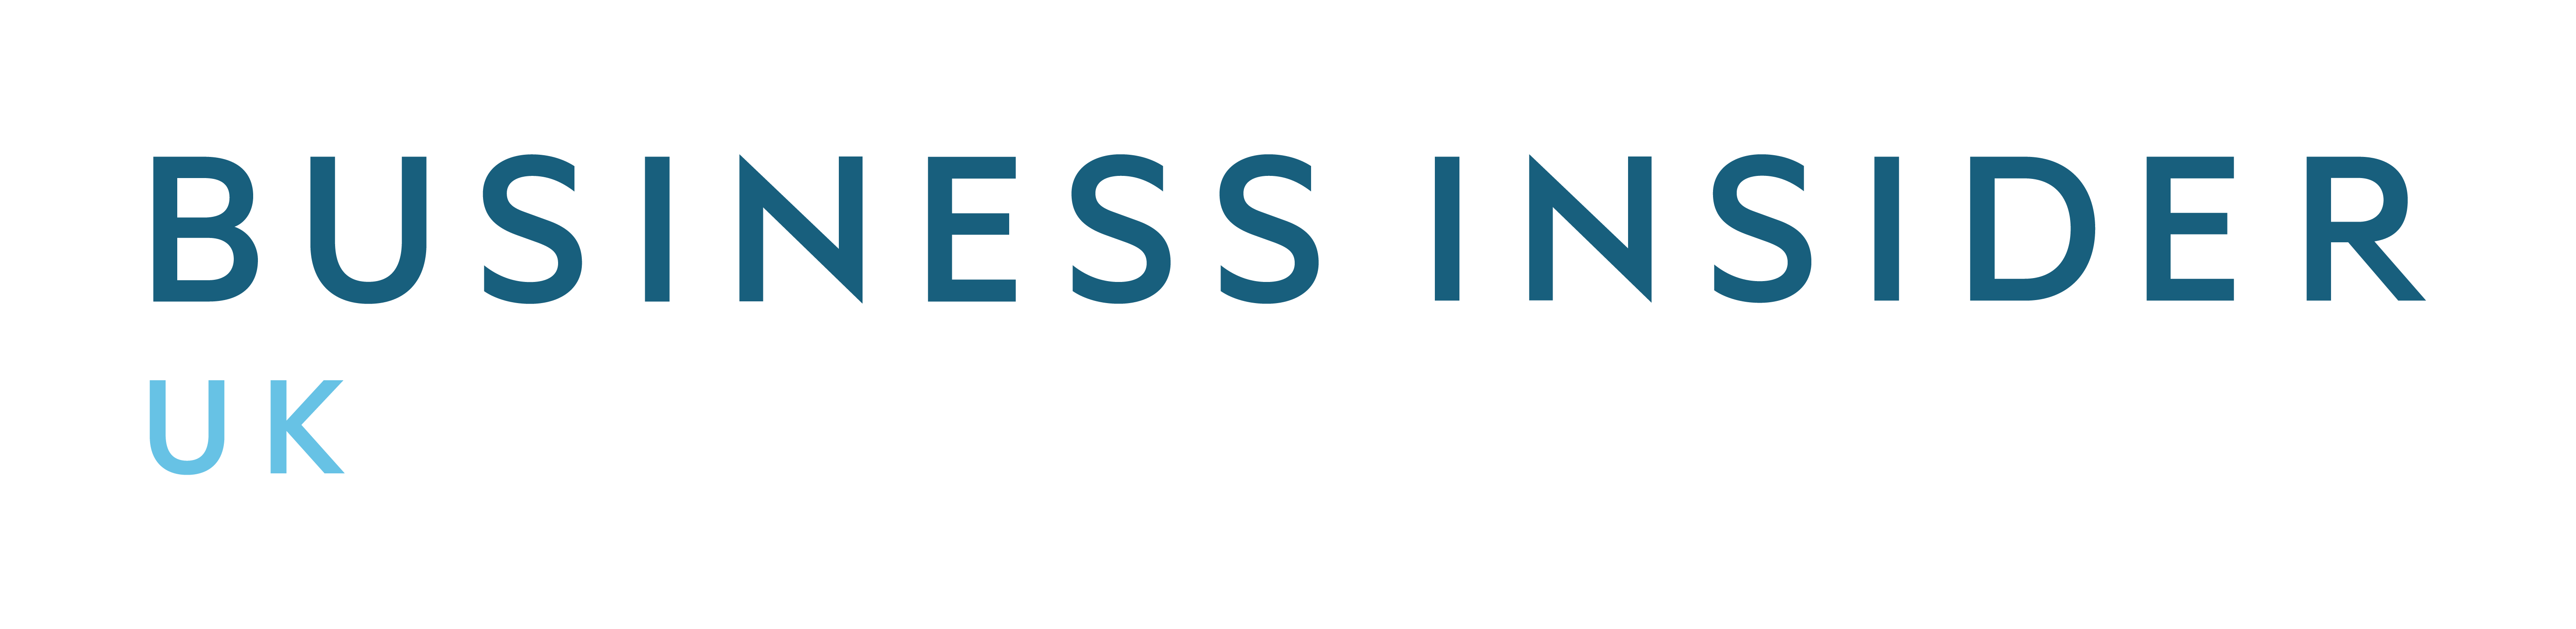 Thisisinsider Logo - Business Insider Logos